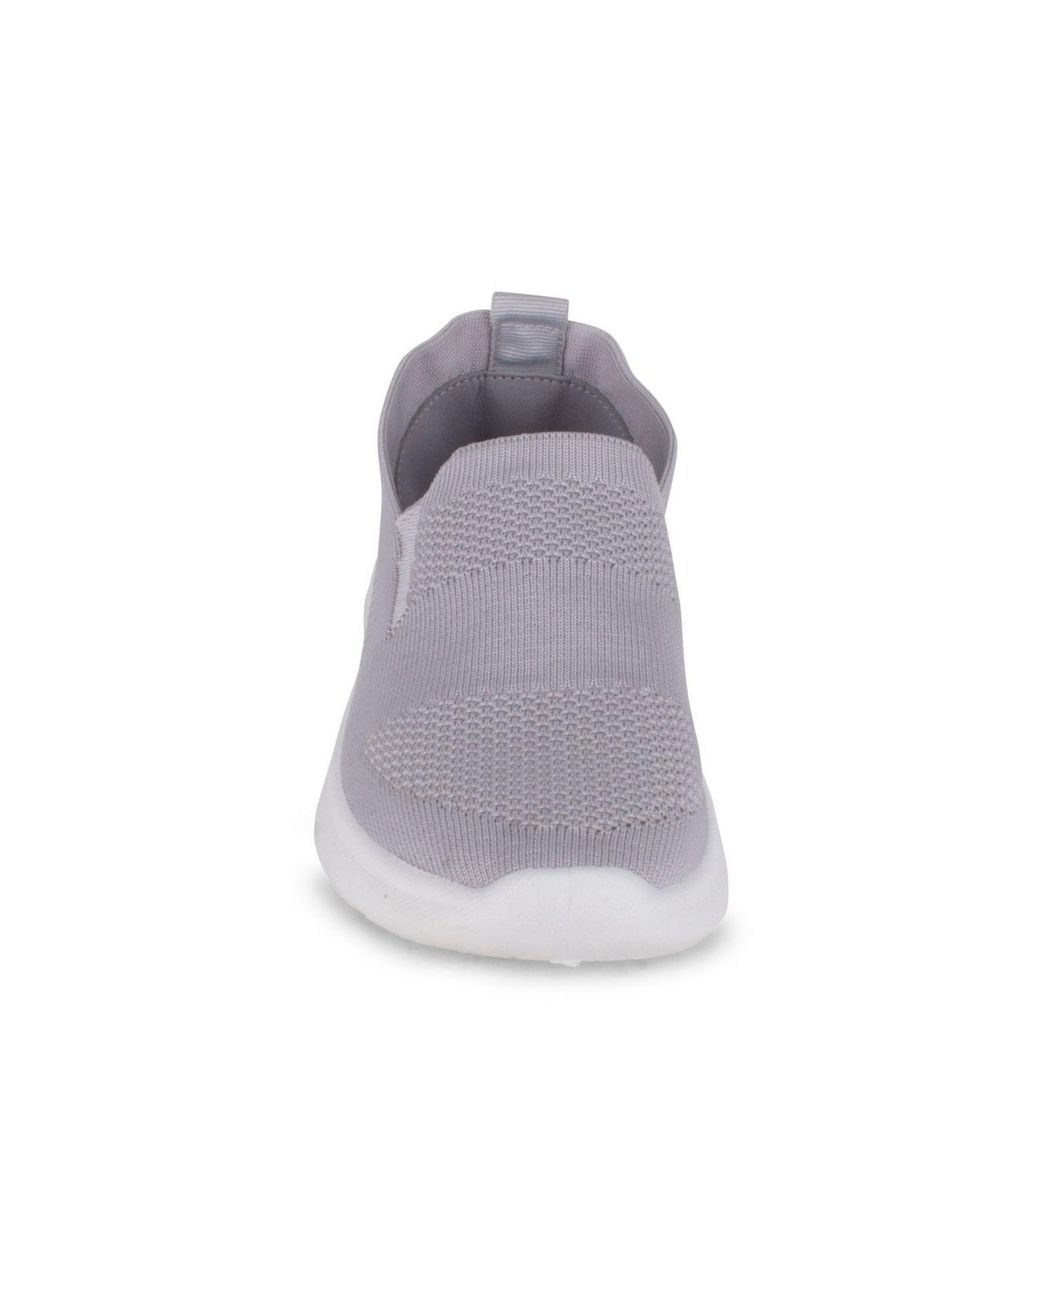 Danskin Synthetic Admire Slip On Knit Sneakers in Gray | Lyst